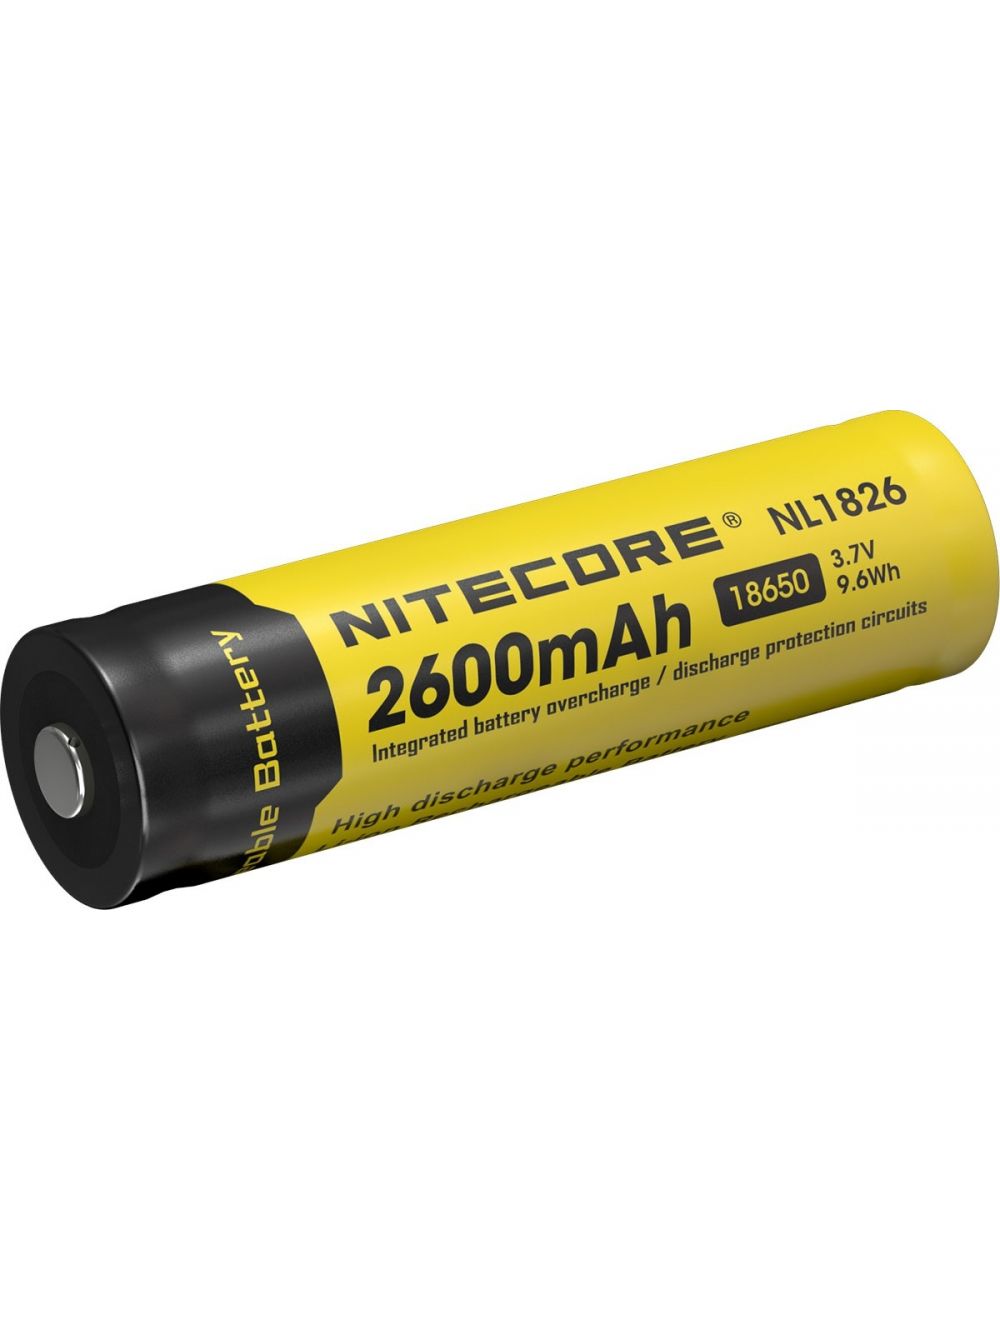 Grof Grof mozaïek Nitecore NL1826 Oplaadbare 18650 Li-Ion batterij 2600mAh kopen?  Multitools.nl